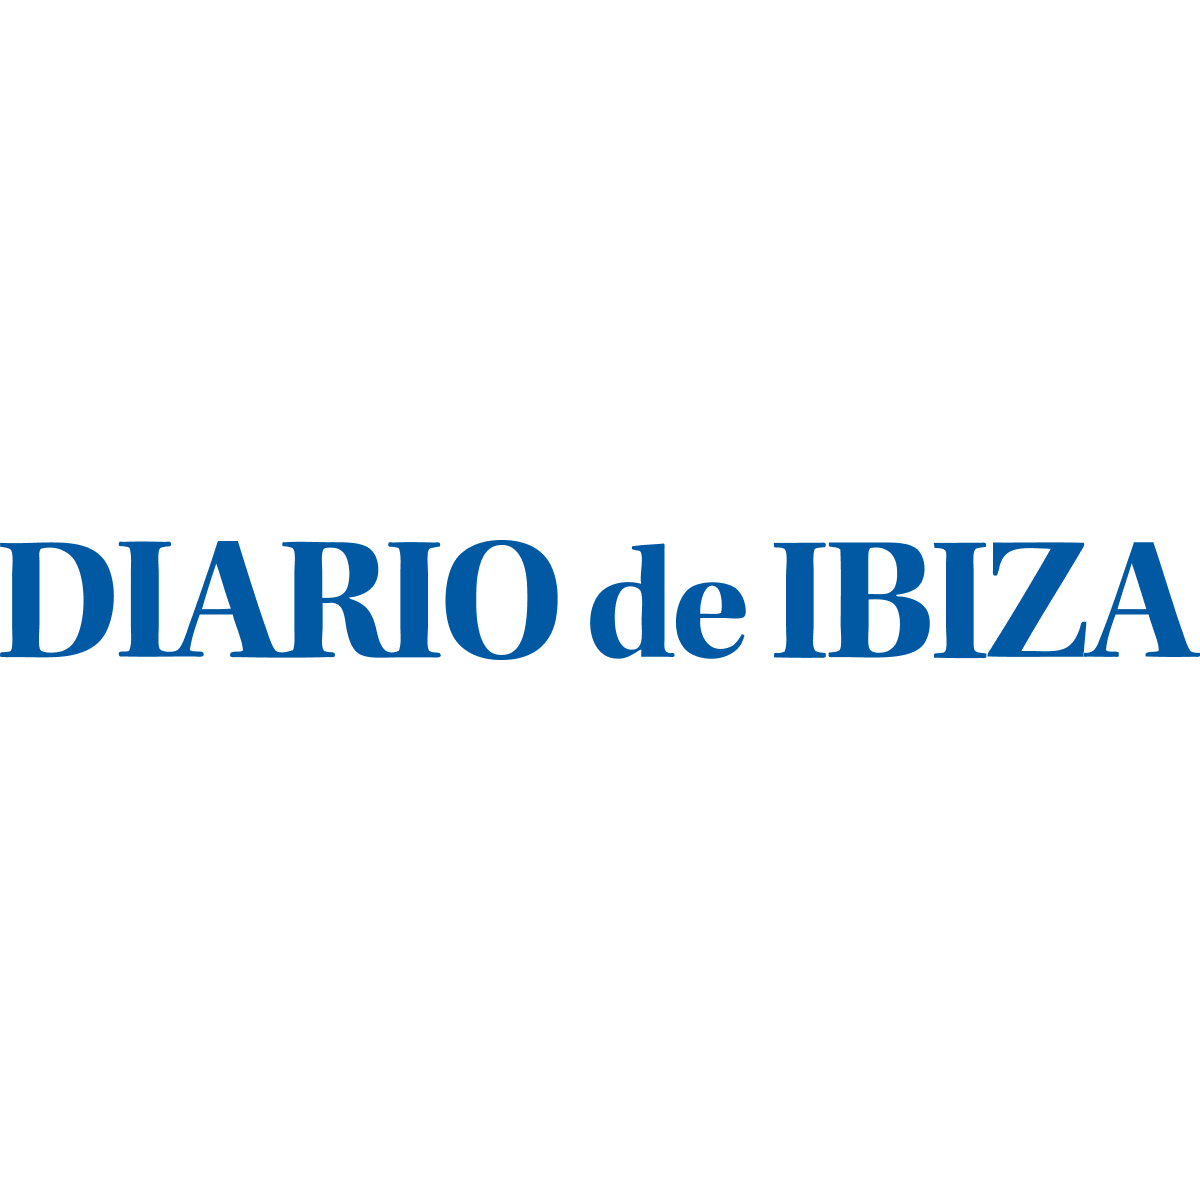 www.diariodeibiza.es